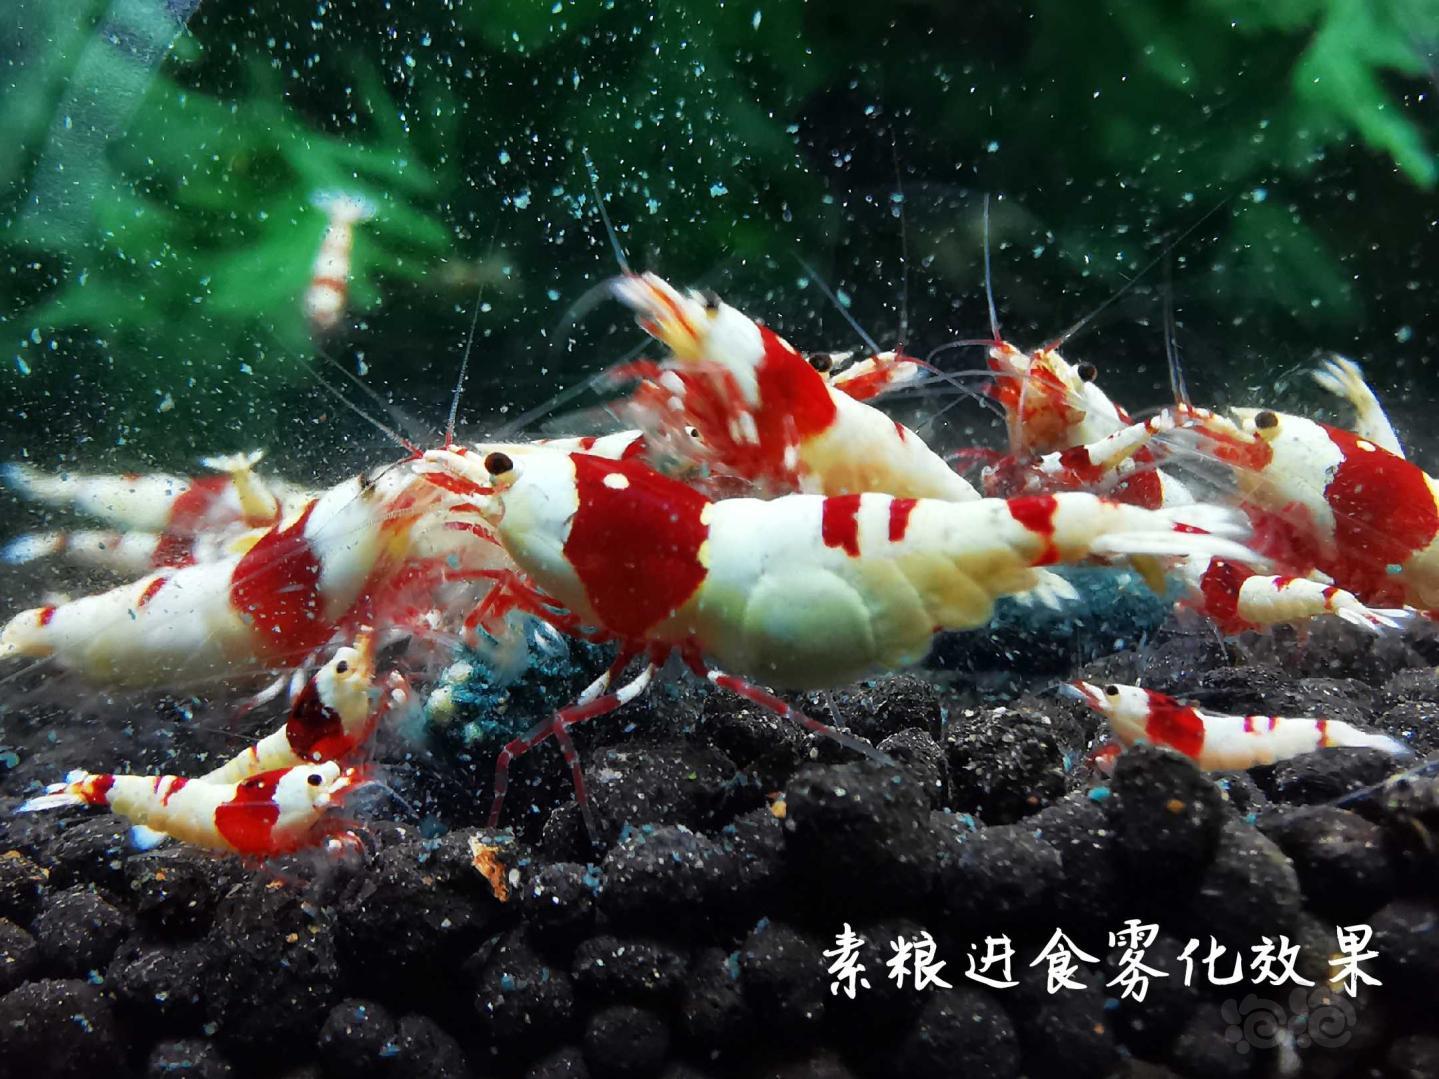 【虾】2020-05-08RMB拍卖瑾福水晶虾粮套装一套-图6